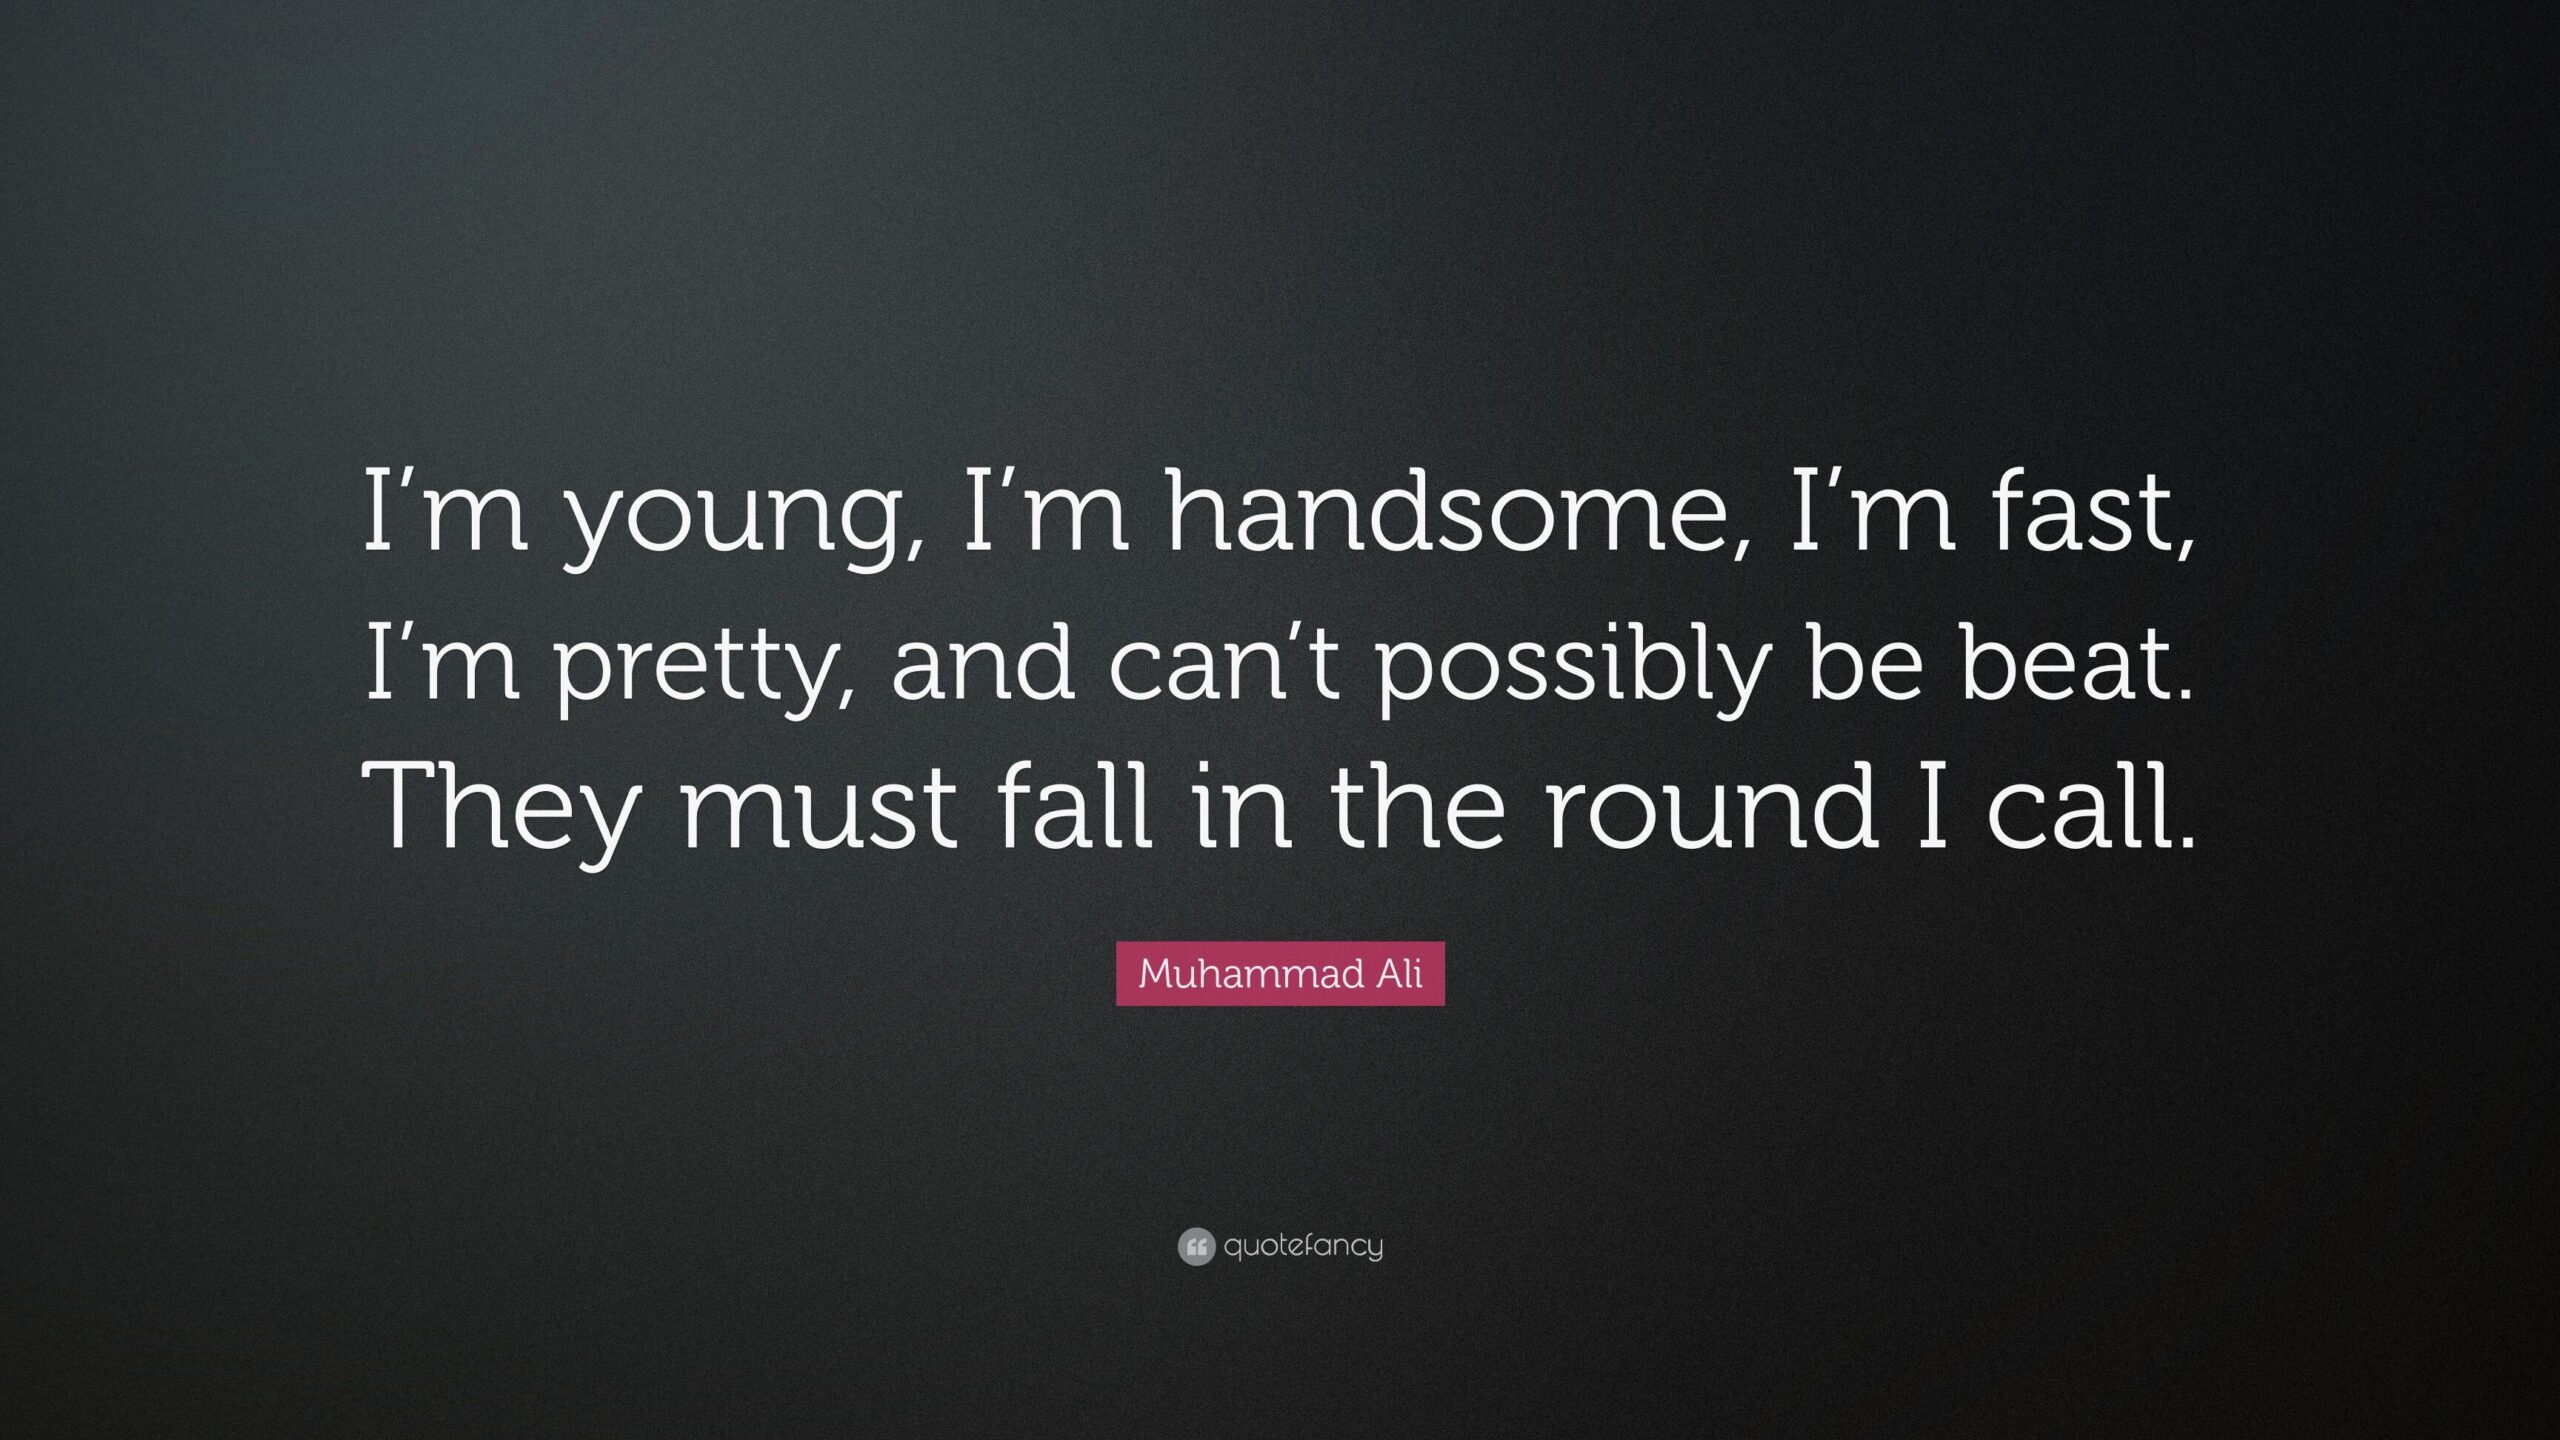 Cita de Muhammad Ali: “Soy joven, soy guapo, soy rápido, soy bonito...